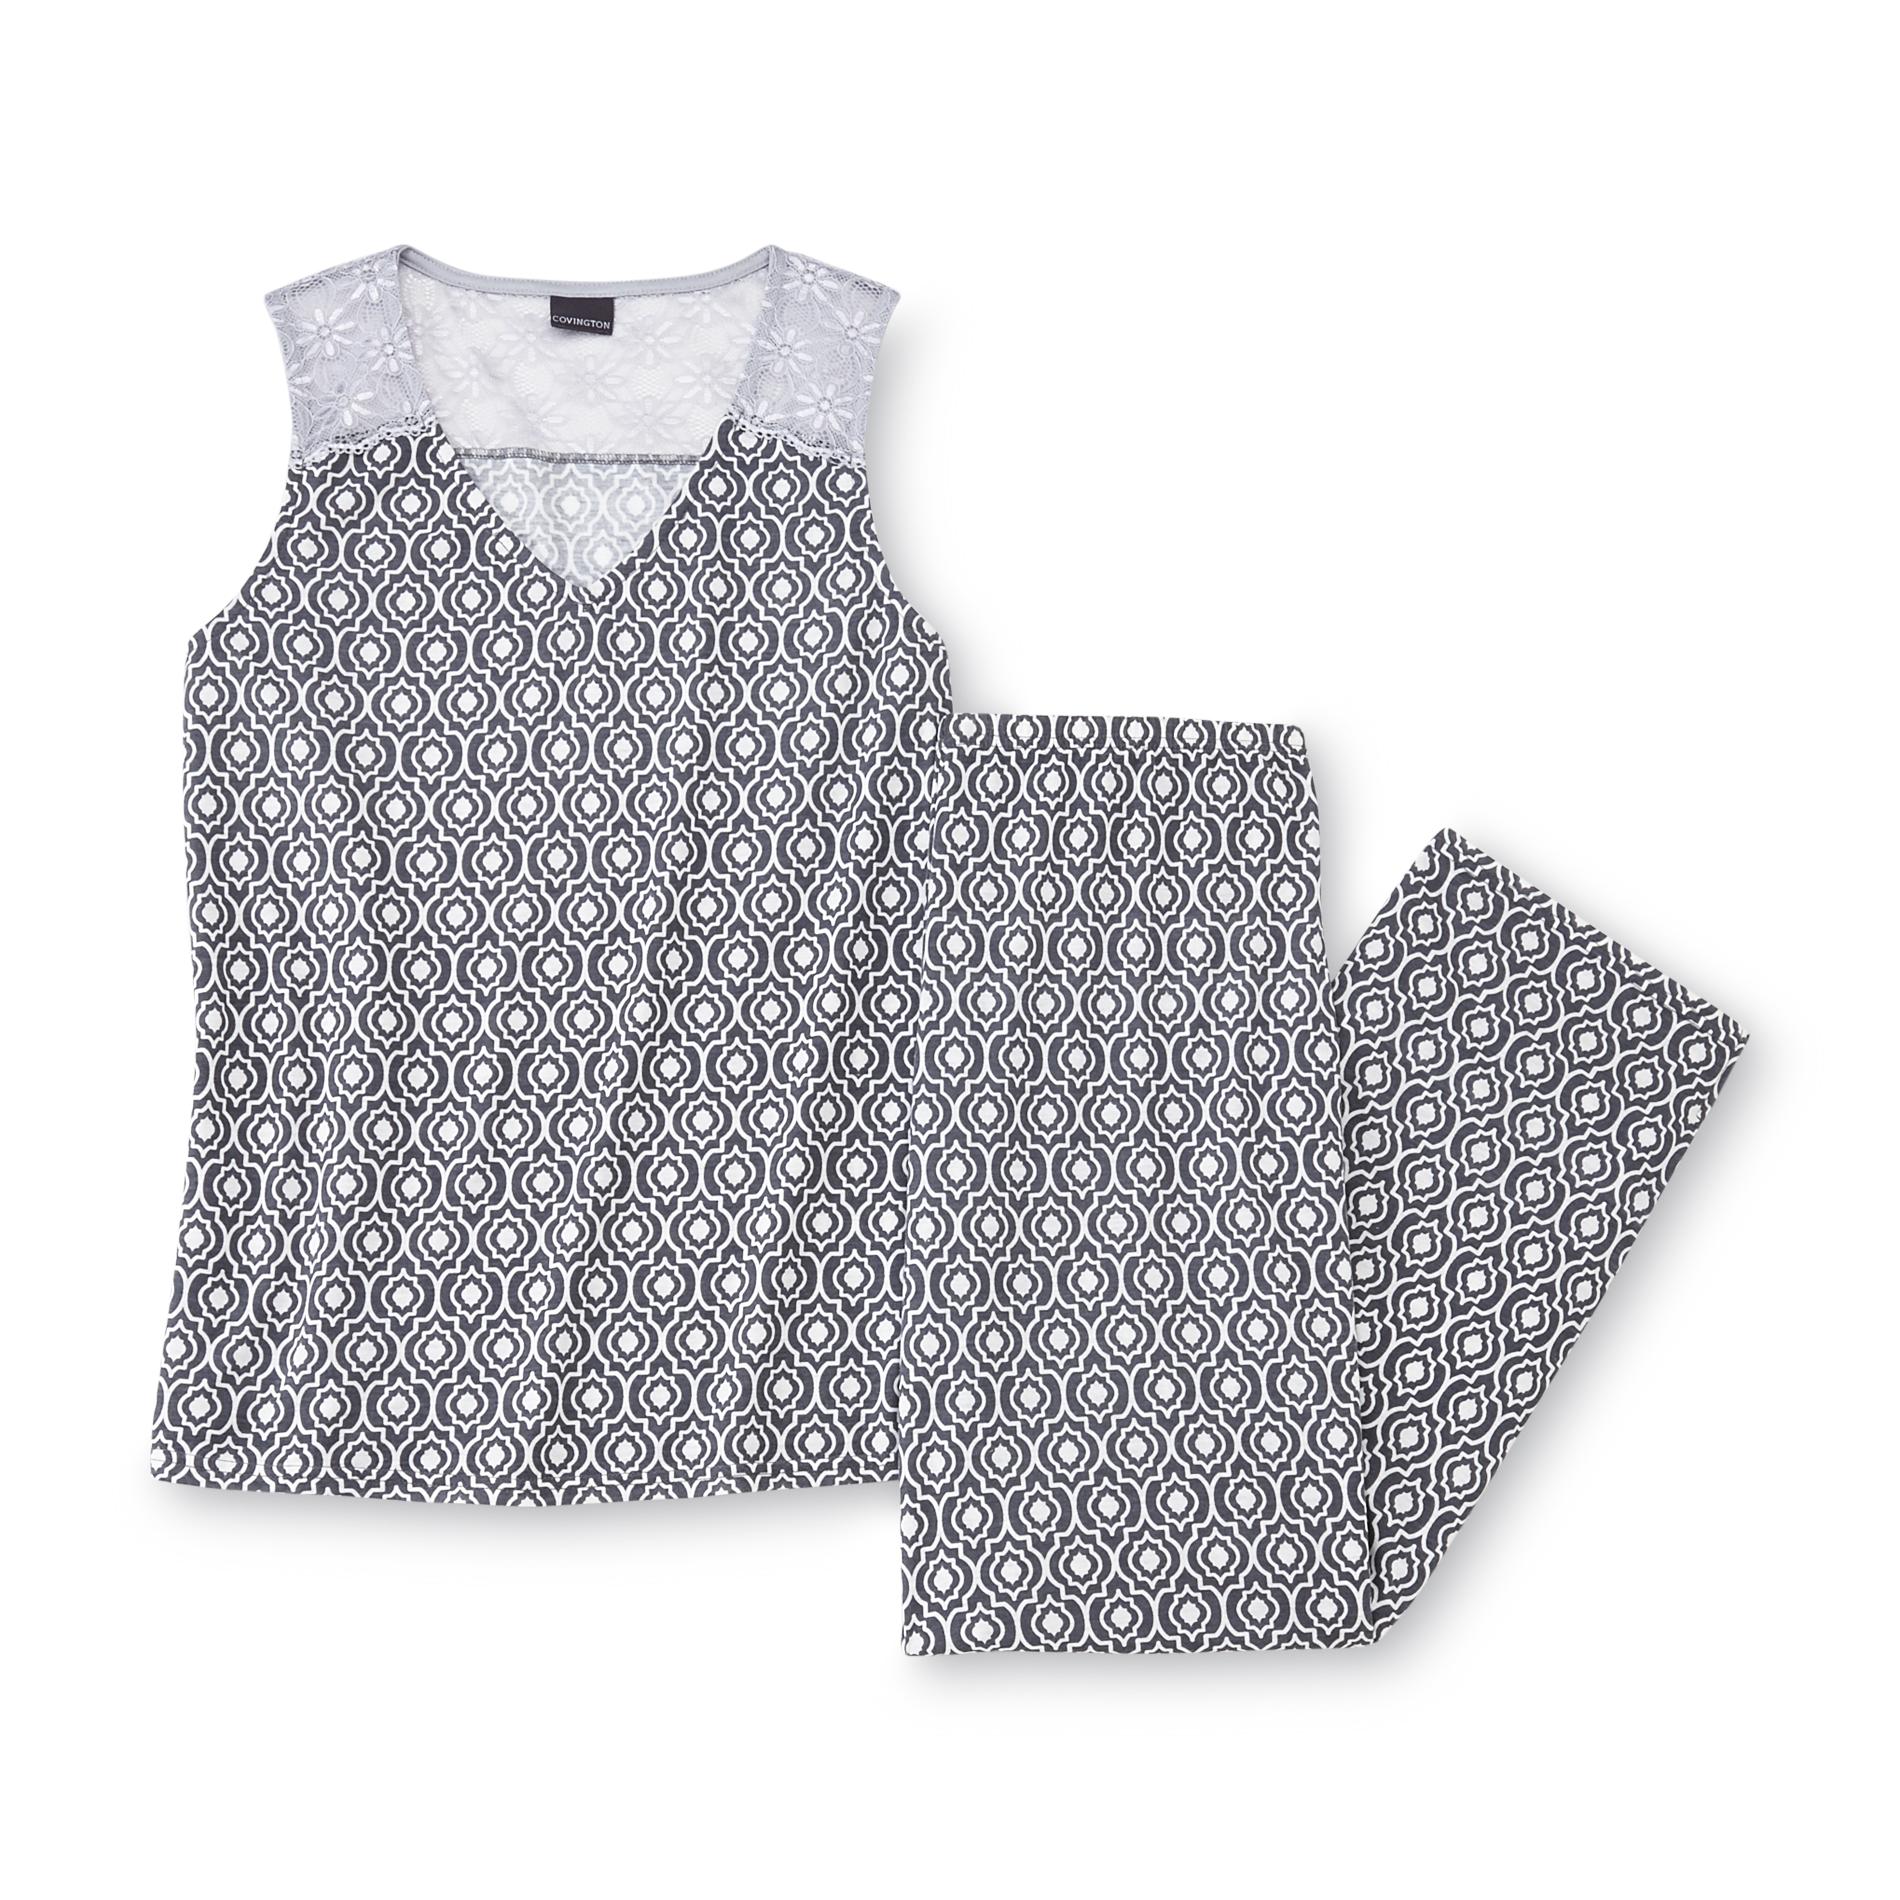 Covington Women's Sleeveless Pajama Shirt & Capri Pants - Geometric Print